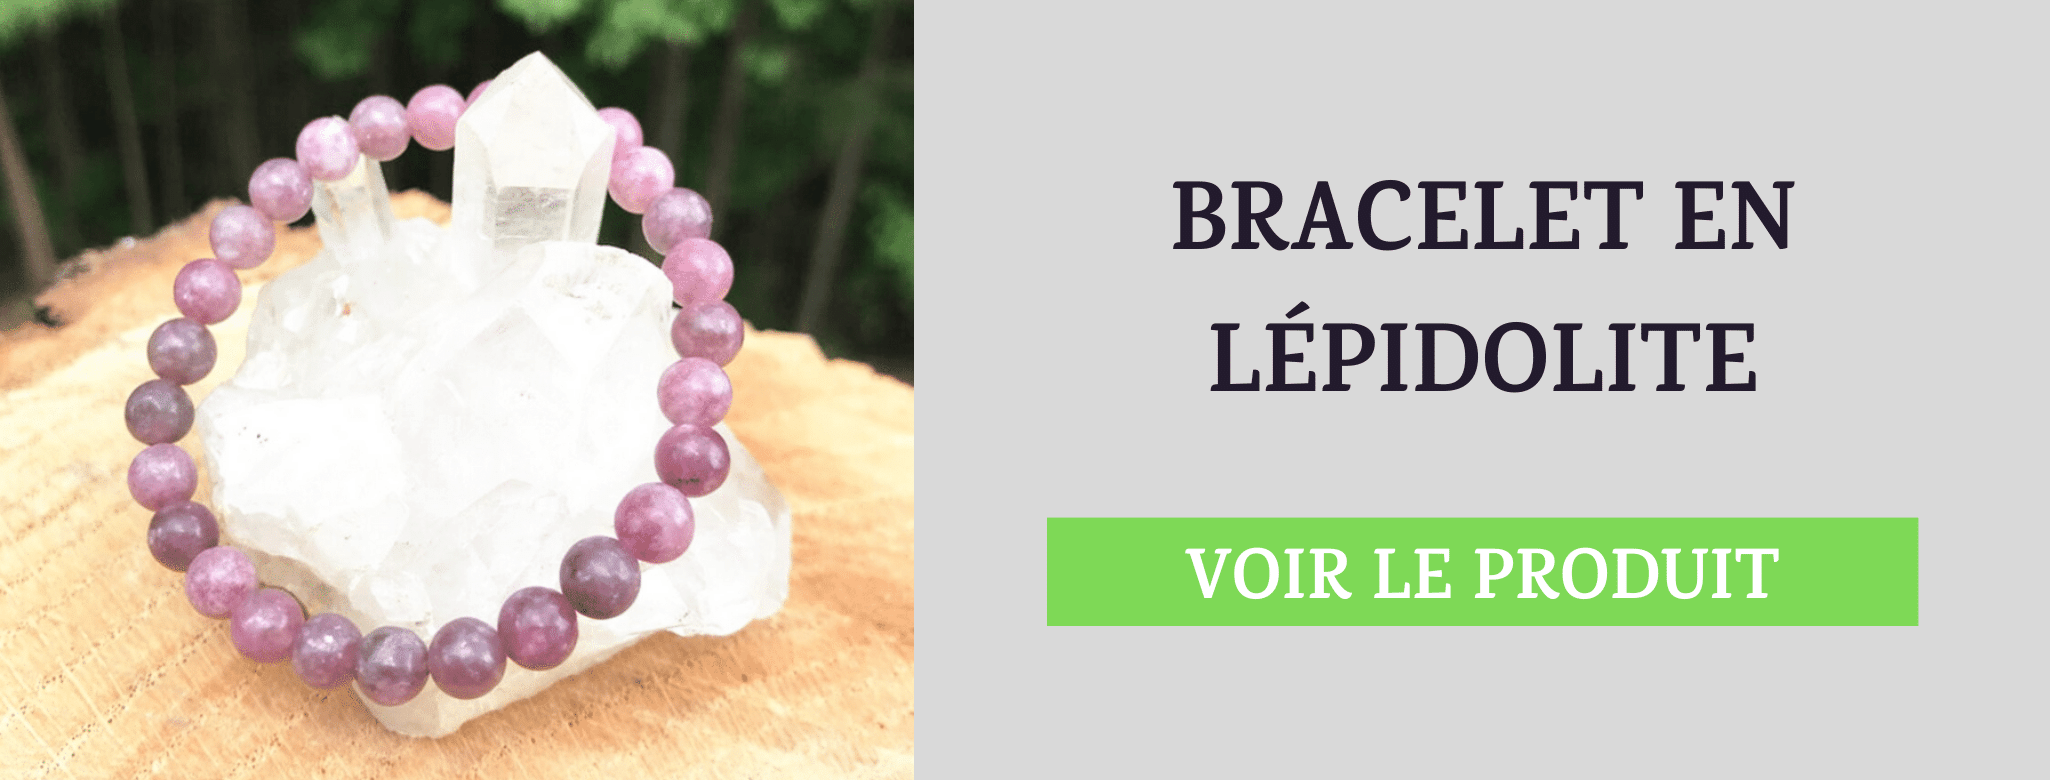 Bracelet Lépidolite Urticaire